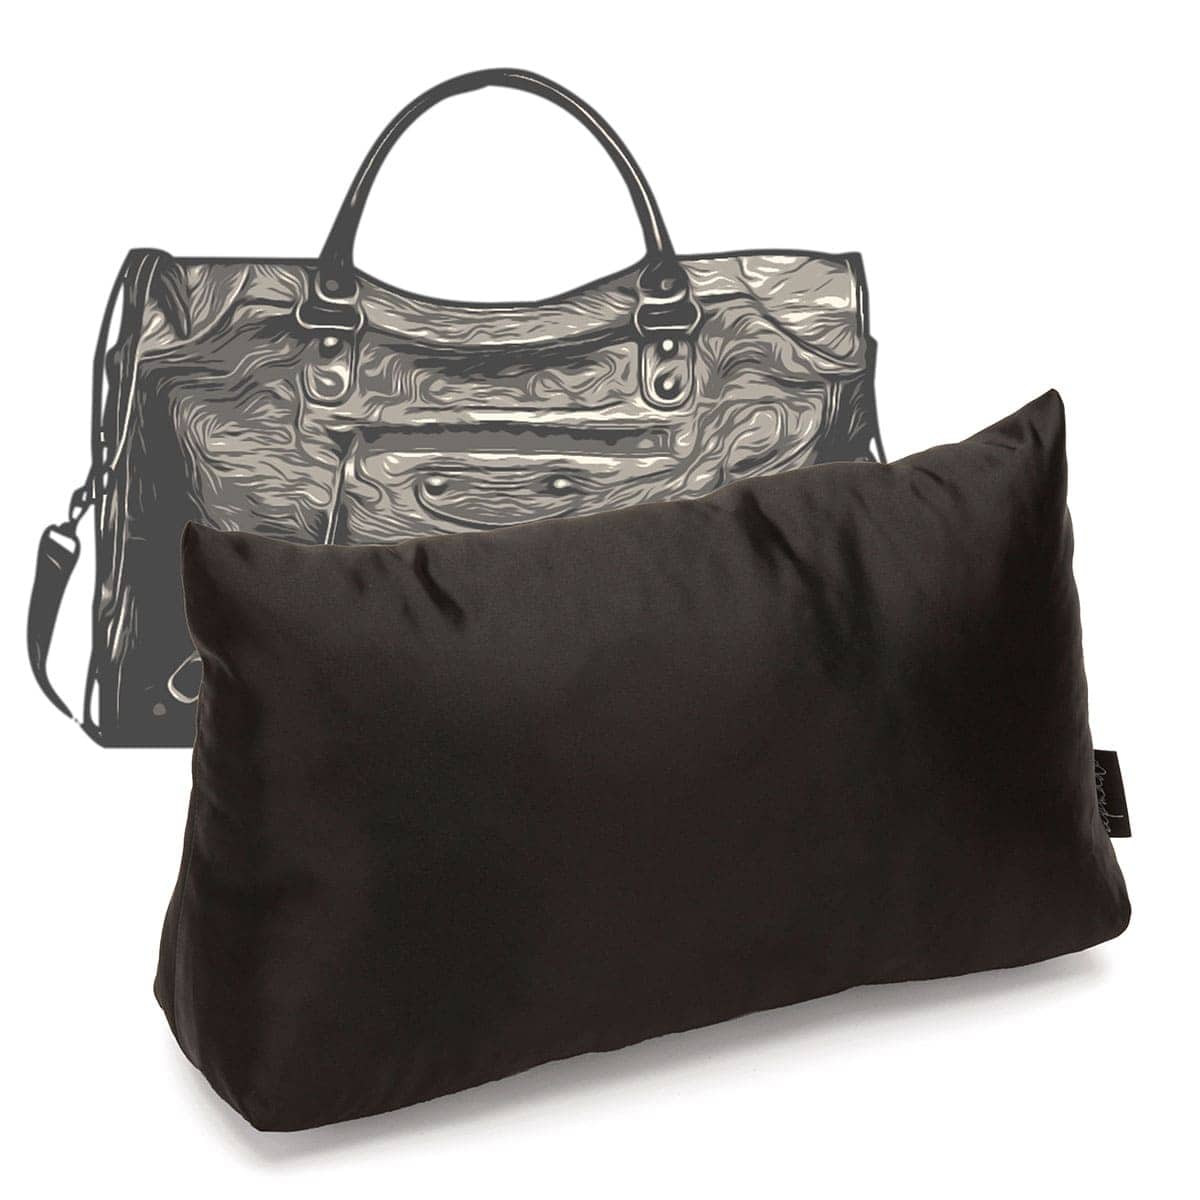 Purse Pillow for Louis Vuitton Neverfull Bag Models, Bag Shaper Pillow,  Purse Storage Stuffer